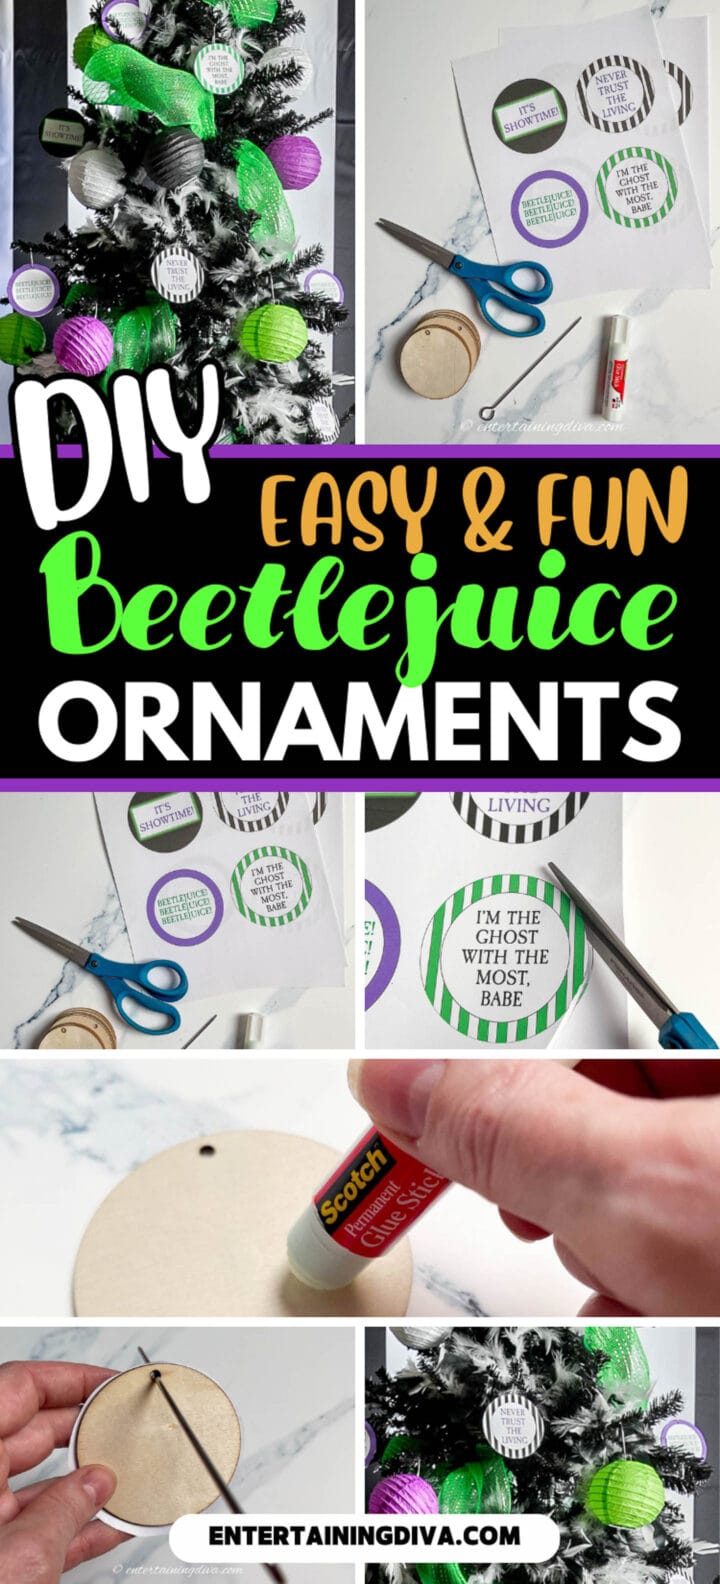 DIY Beetlejuice ornaments.